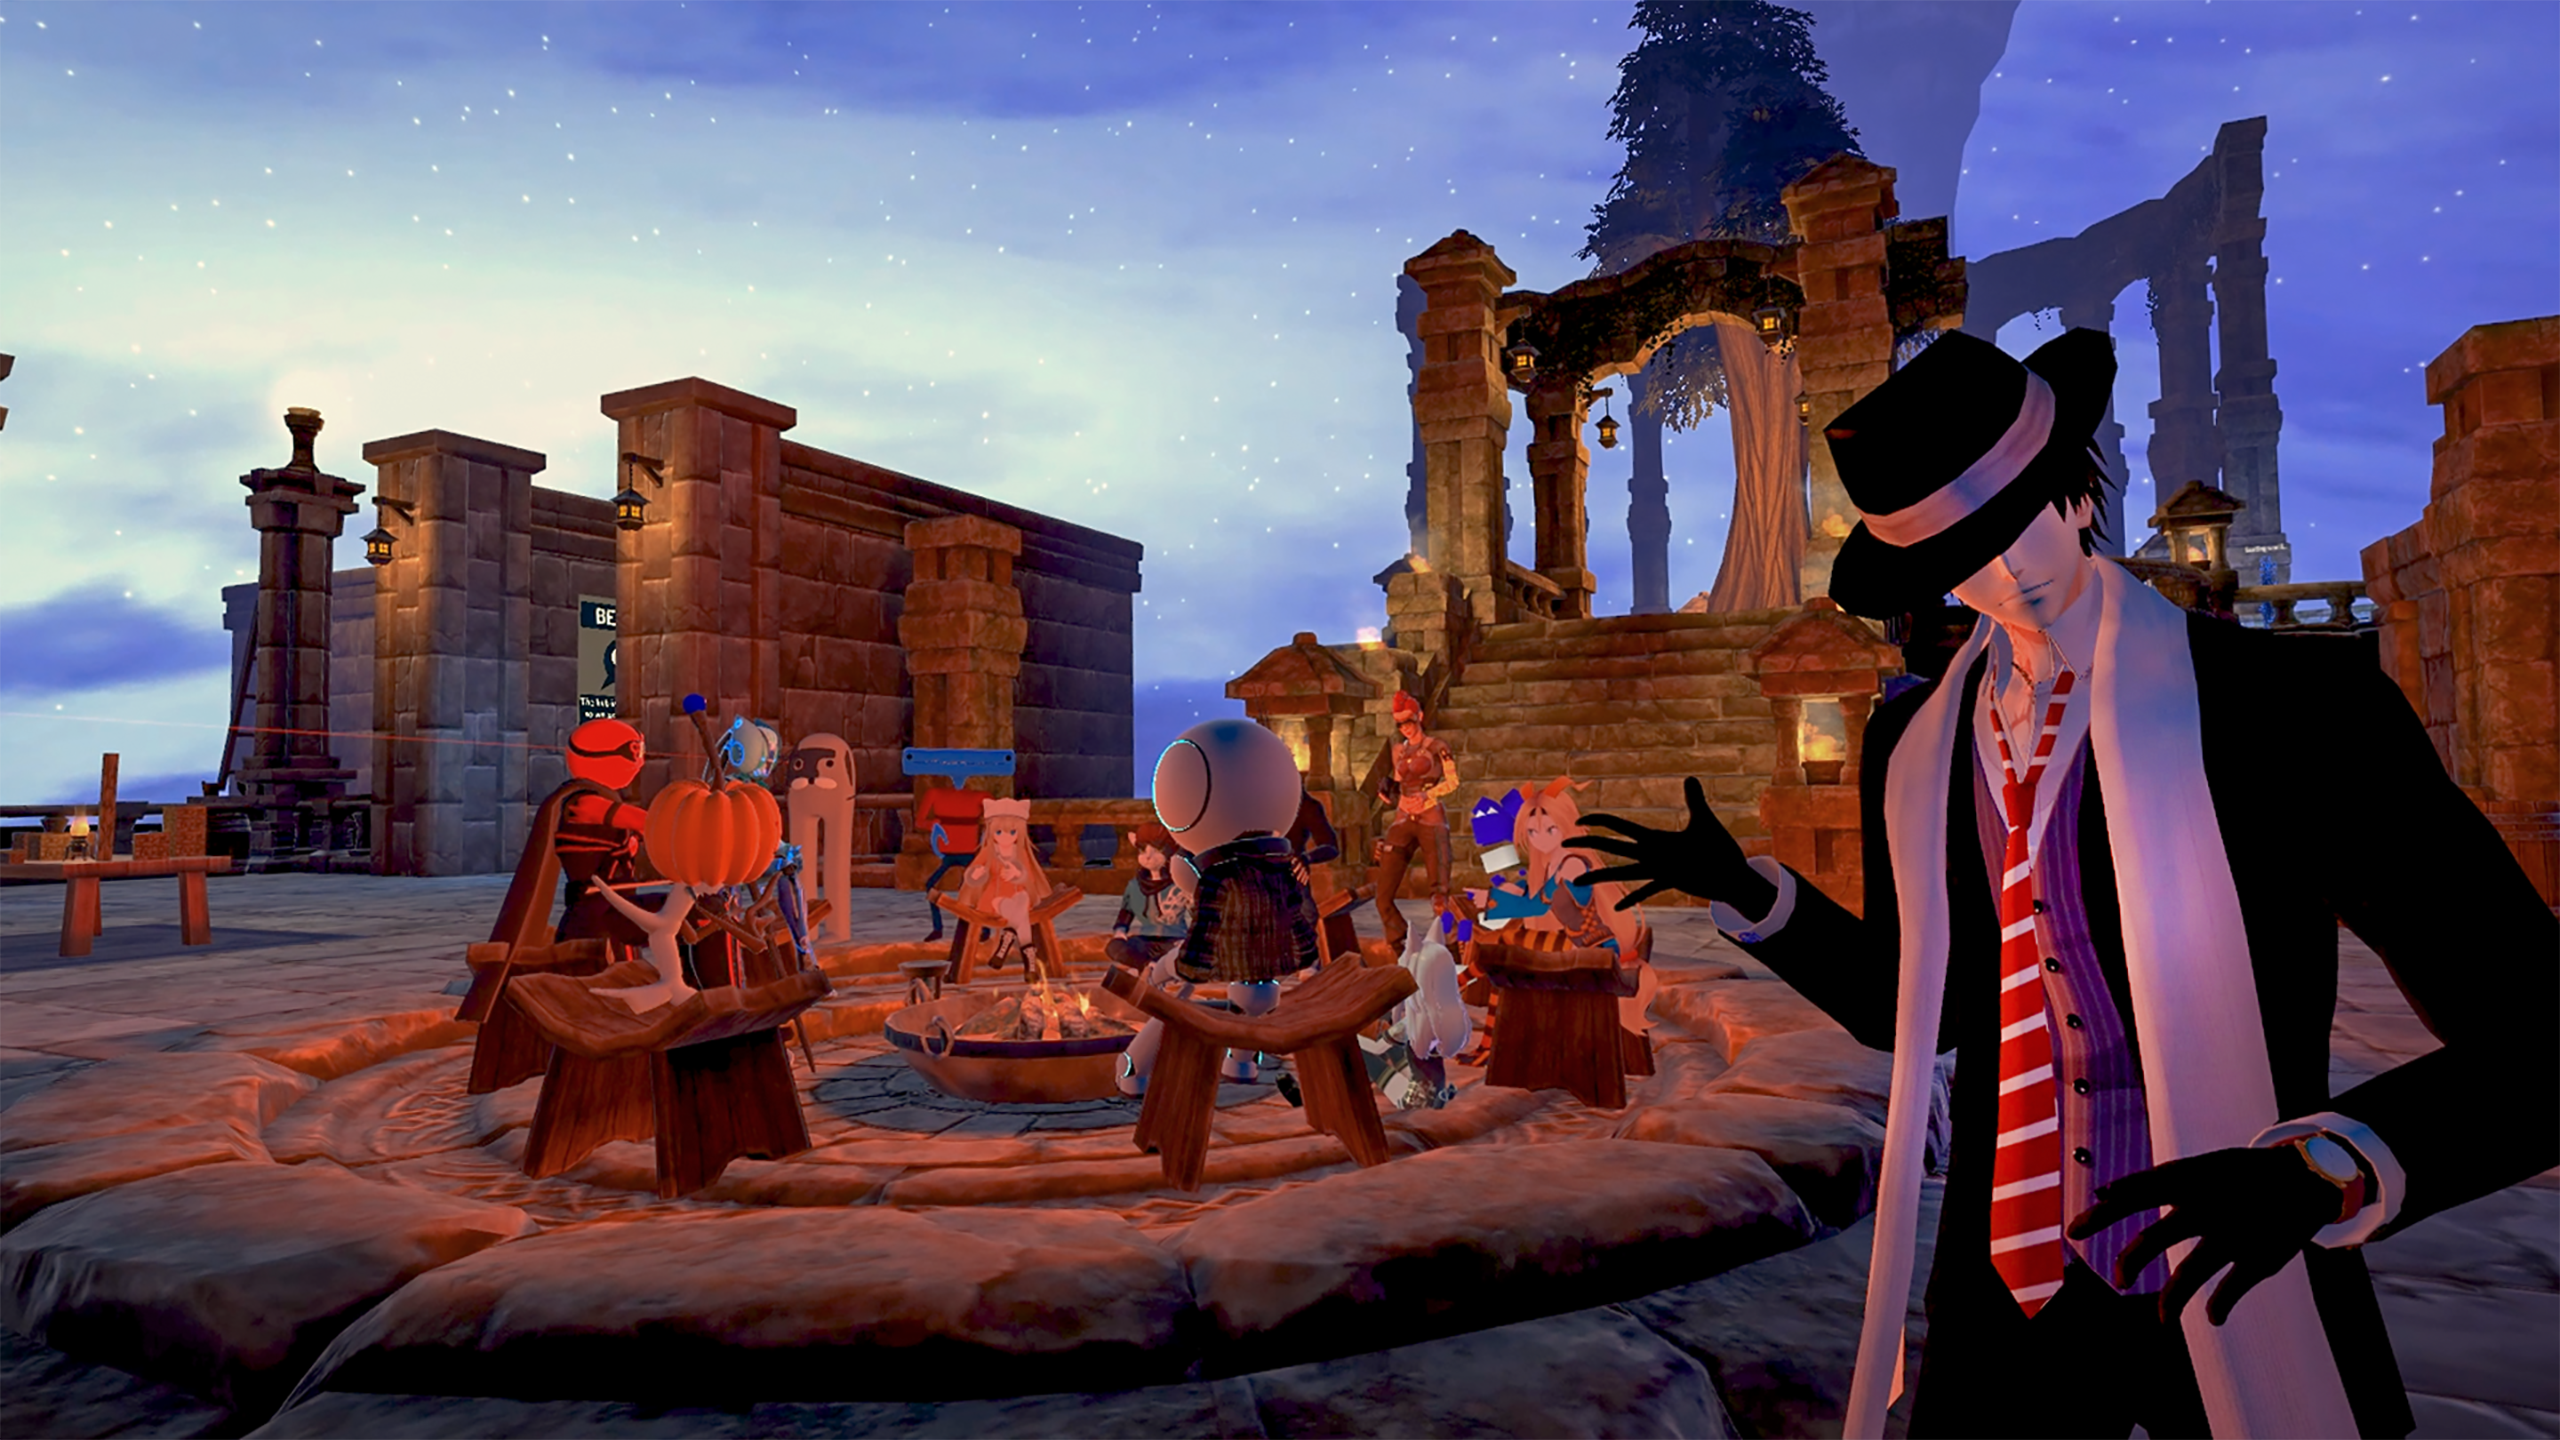 图片展示了一款游戏的场景，几个卡通风格的角色围坐在篝火旁，背景是夜晚的废墟和星空。